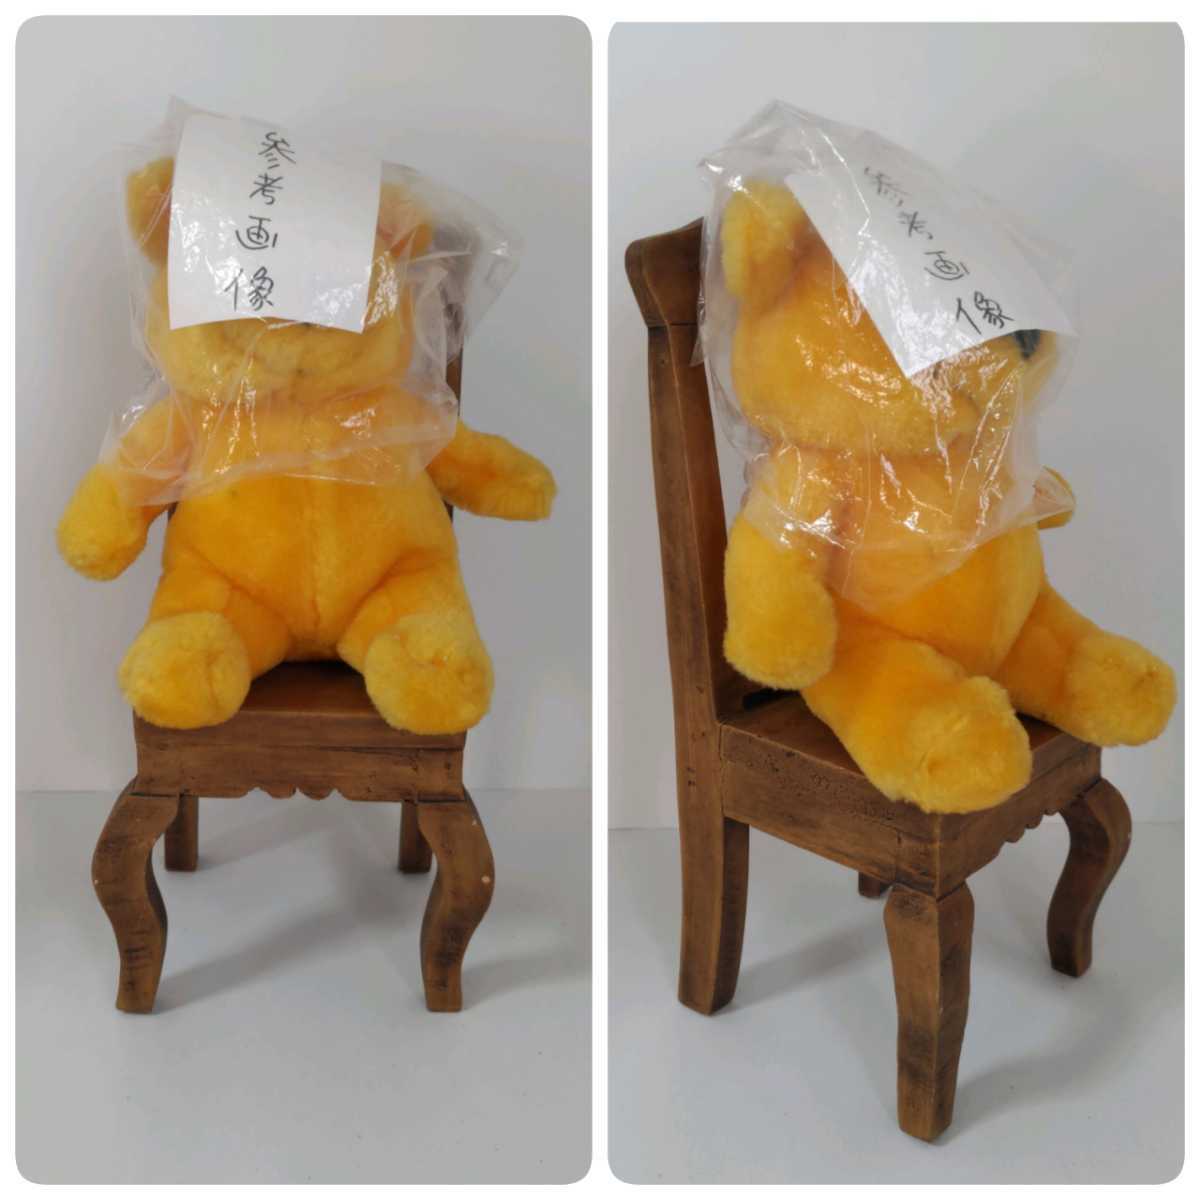 人形用 椅子 イス アンティーク レトロ 木製 27.5cm 人形は商品に含まれません